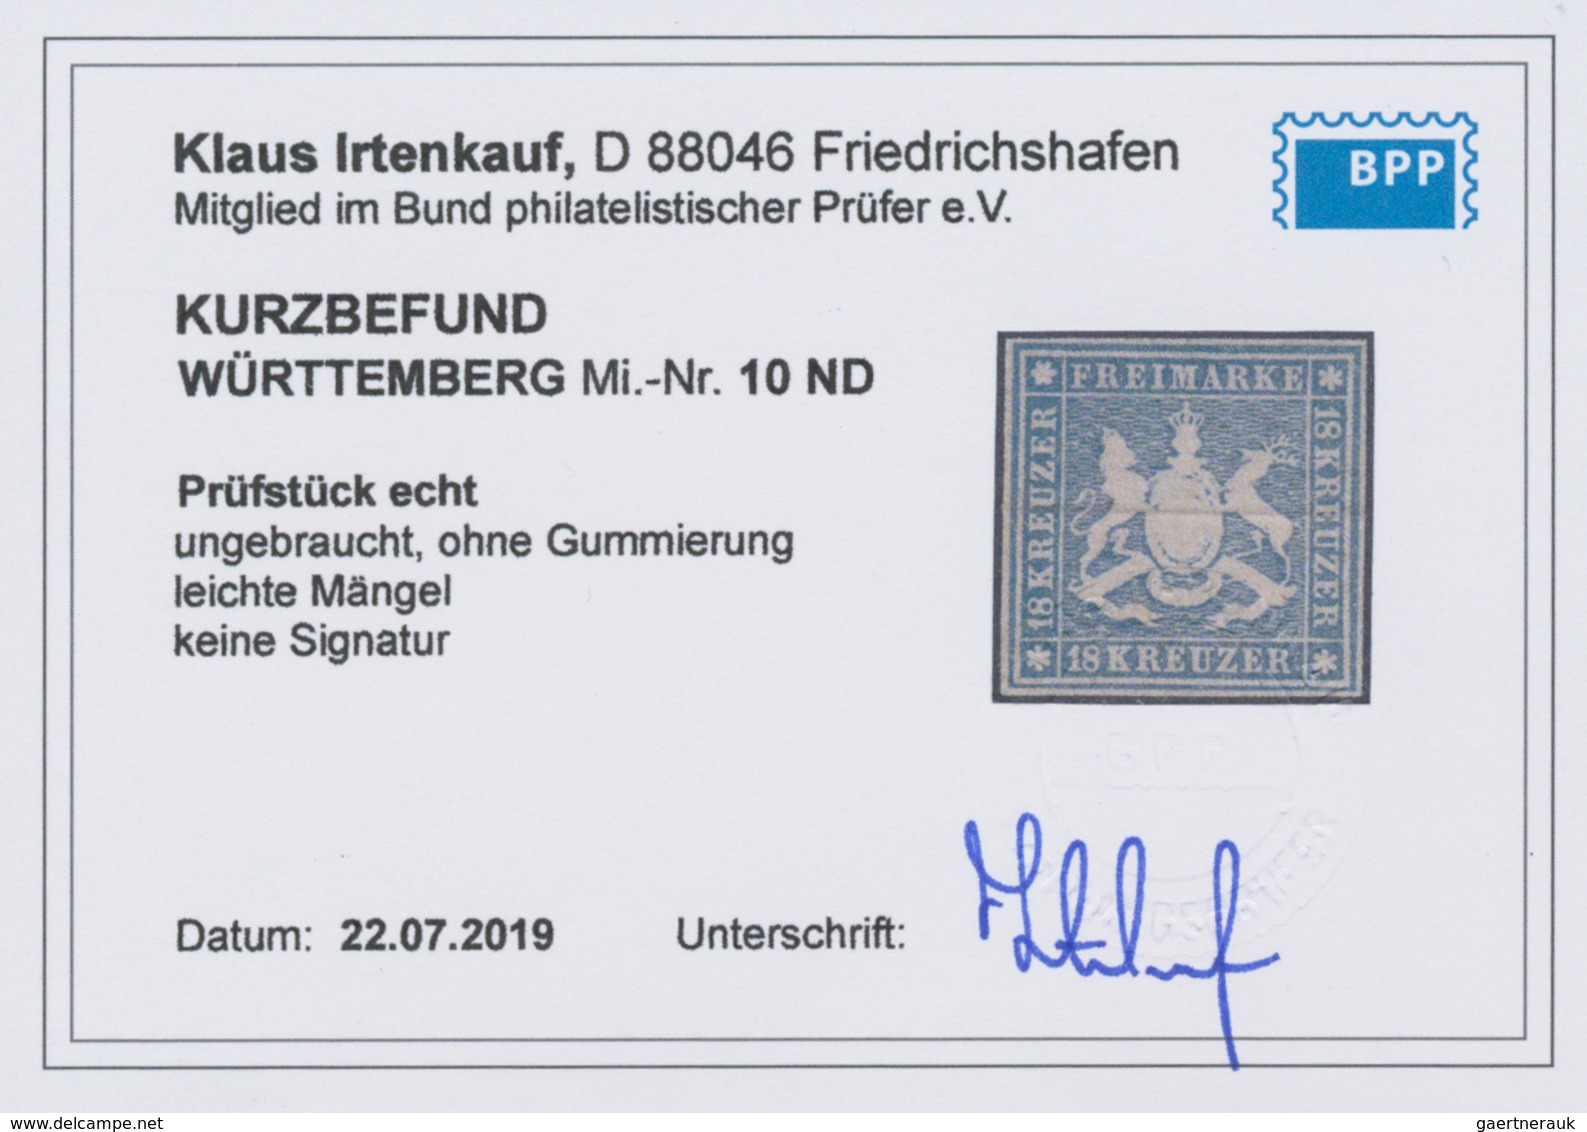 Württemberg - Marken und Briefe: 1857, Wappen 1 Kr. bis 18 Kr. "Amtliche Neudrucke von 1865" mit Sei